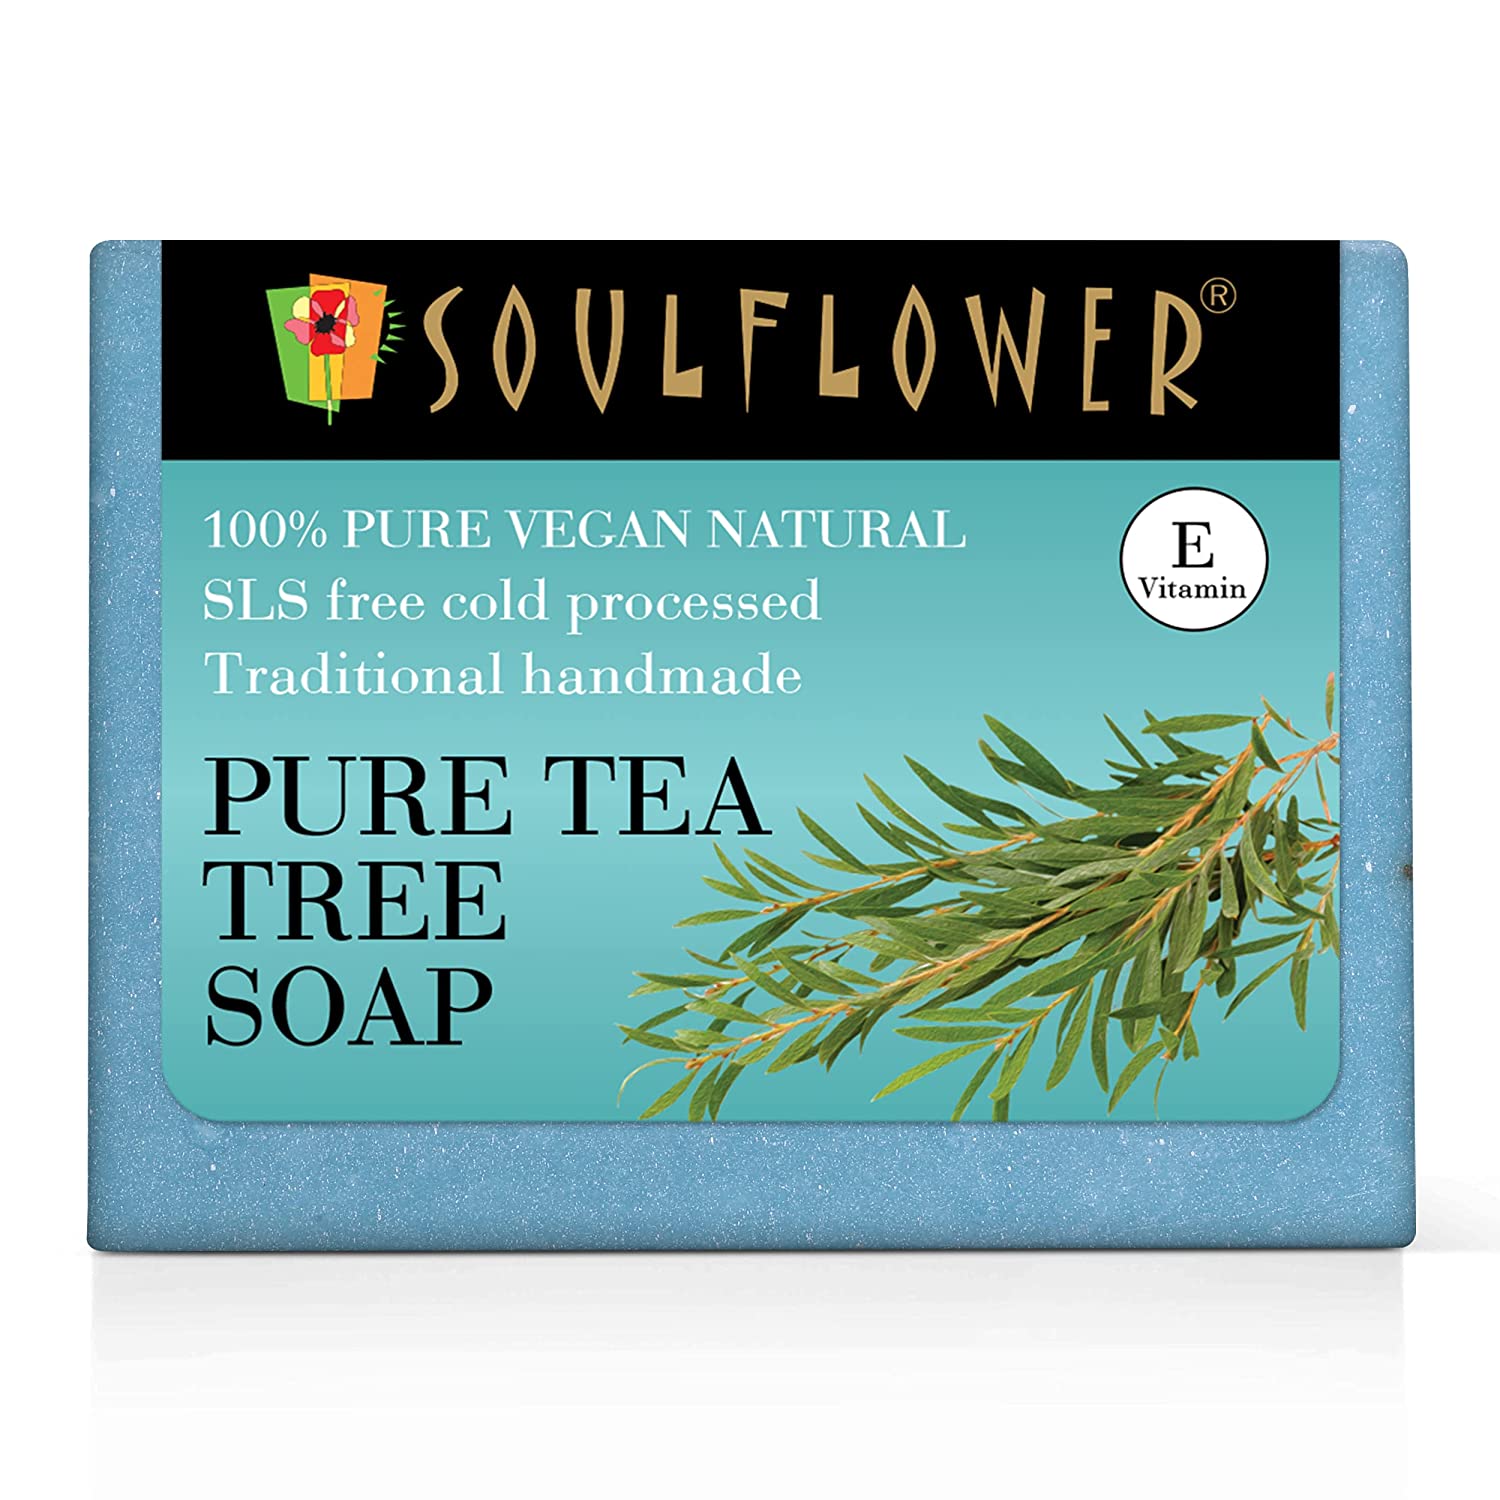 soulflower-tea-tree-soap